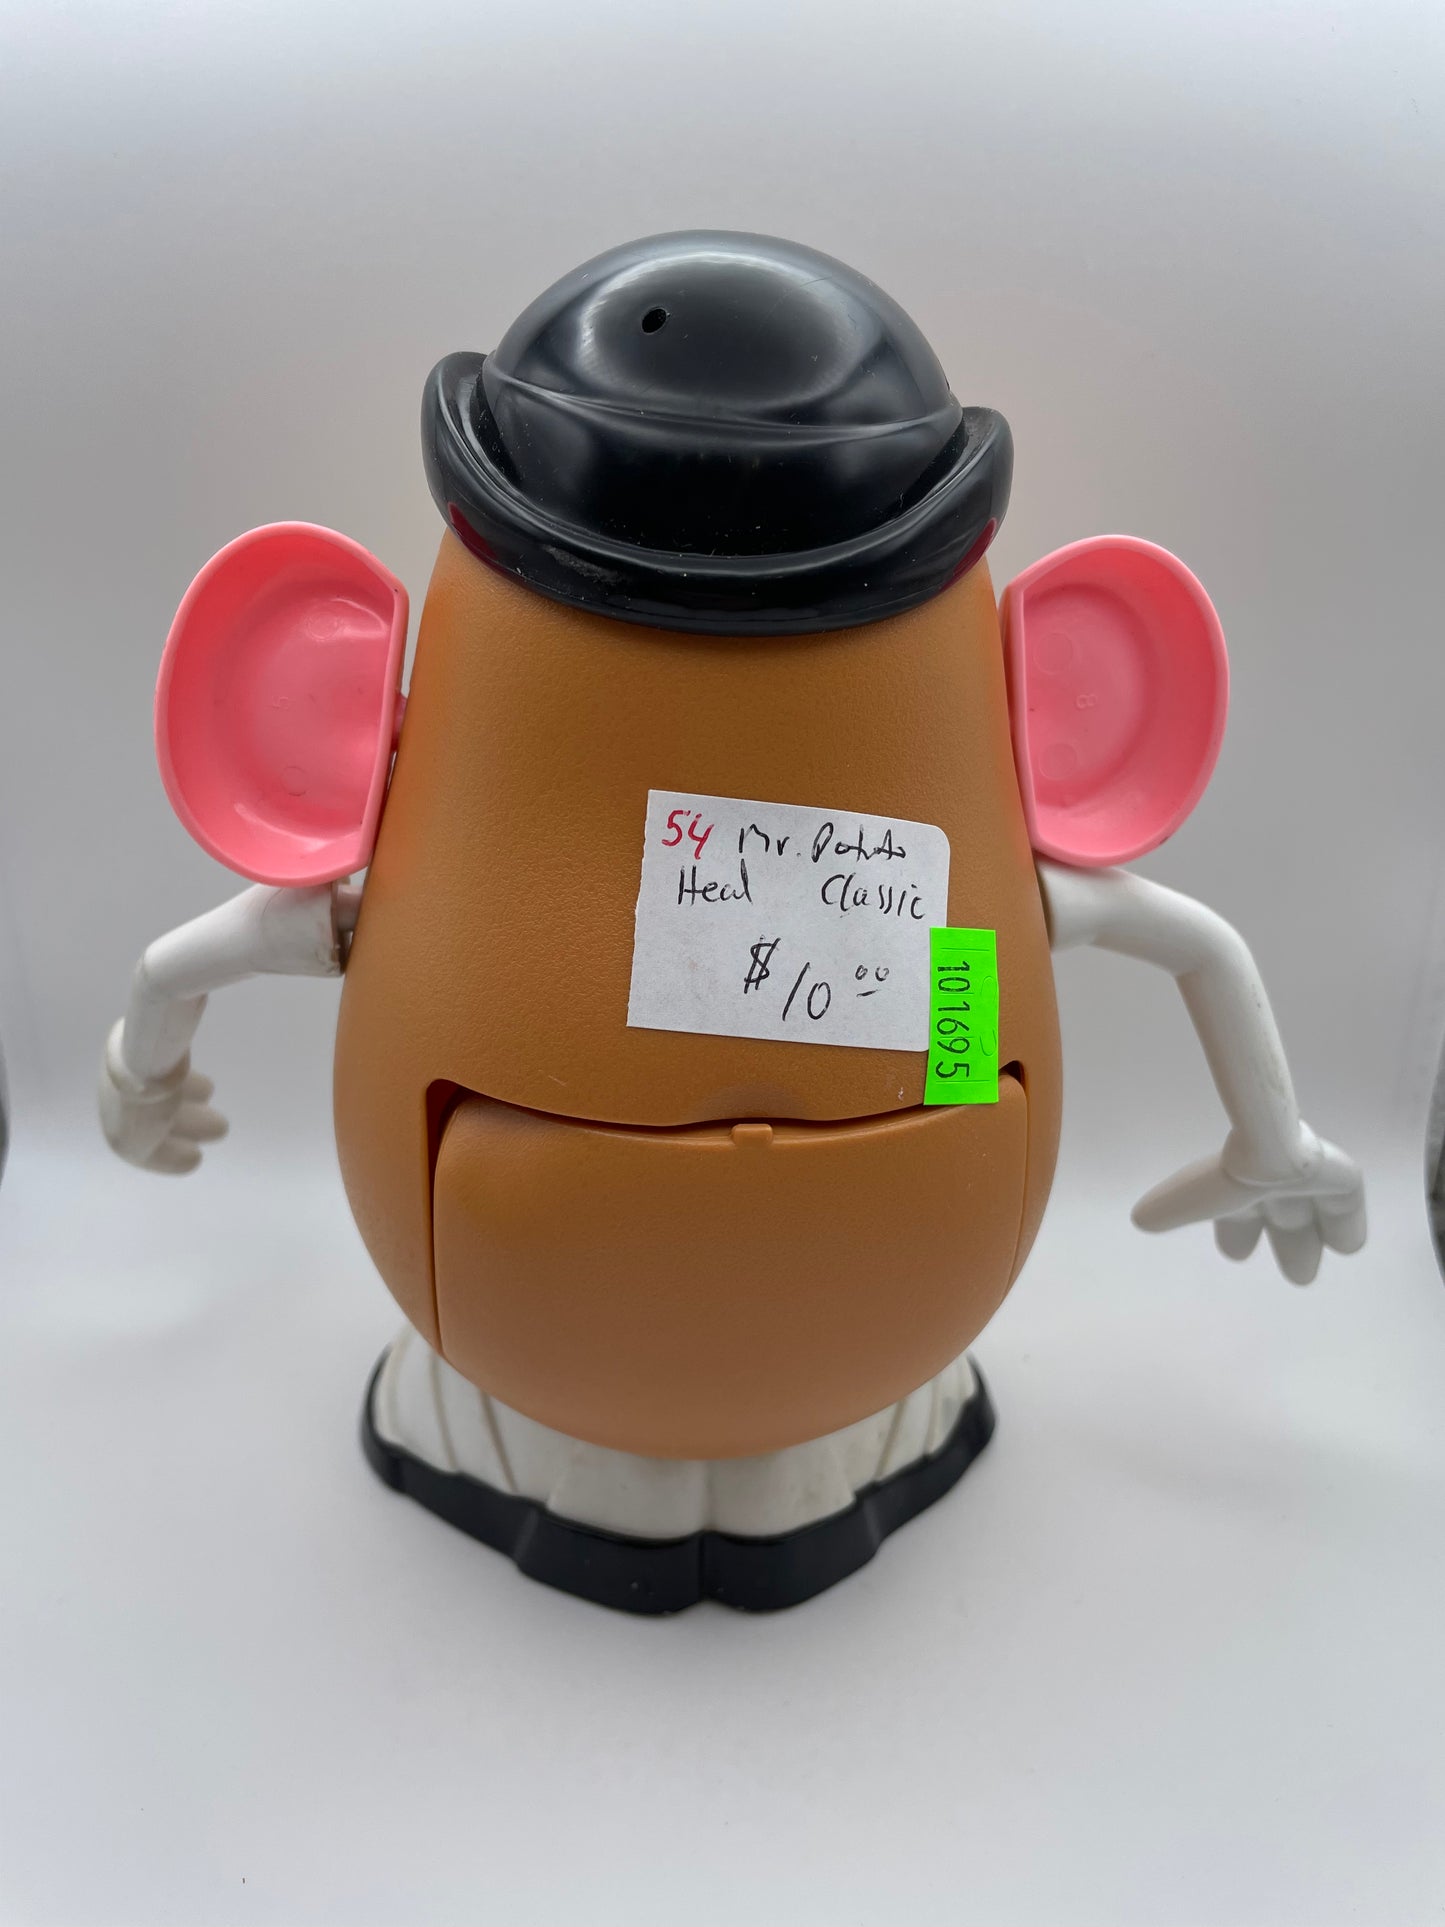 Mr Potato Head - Classic 1985 #101695